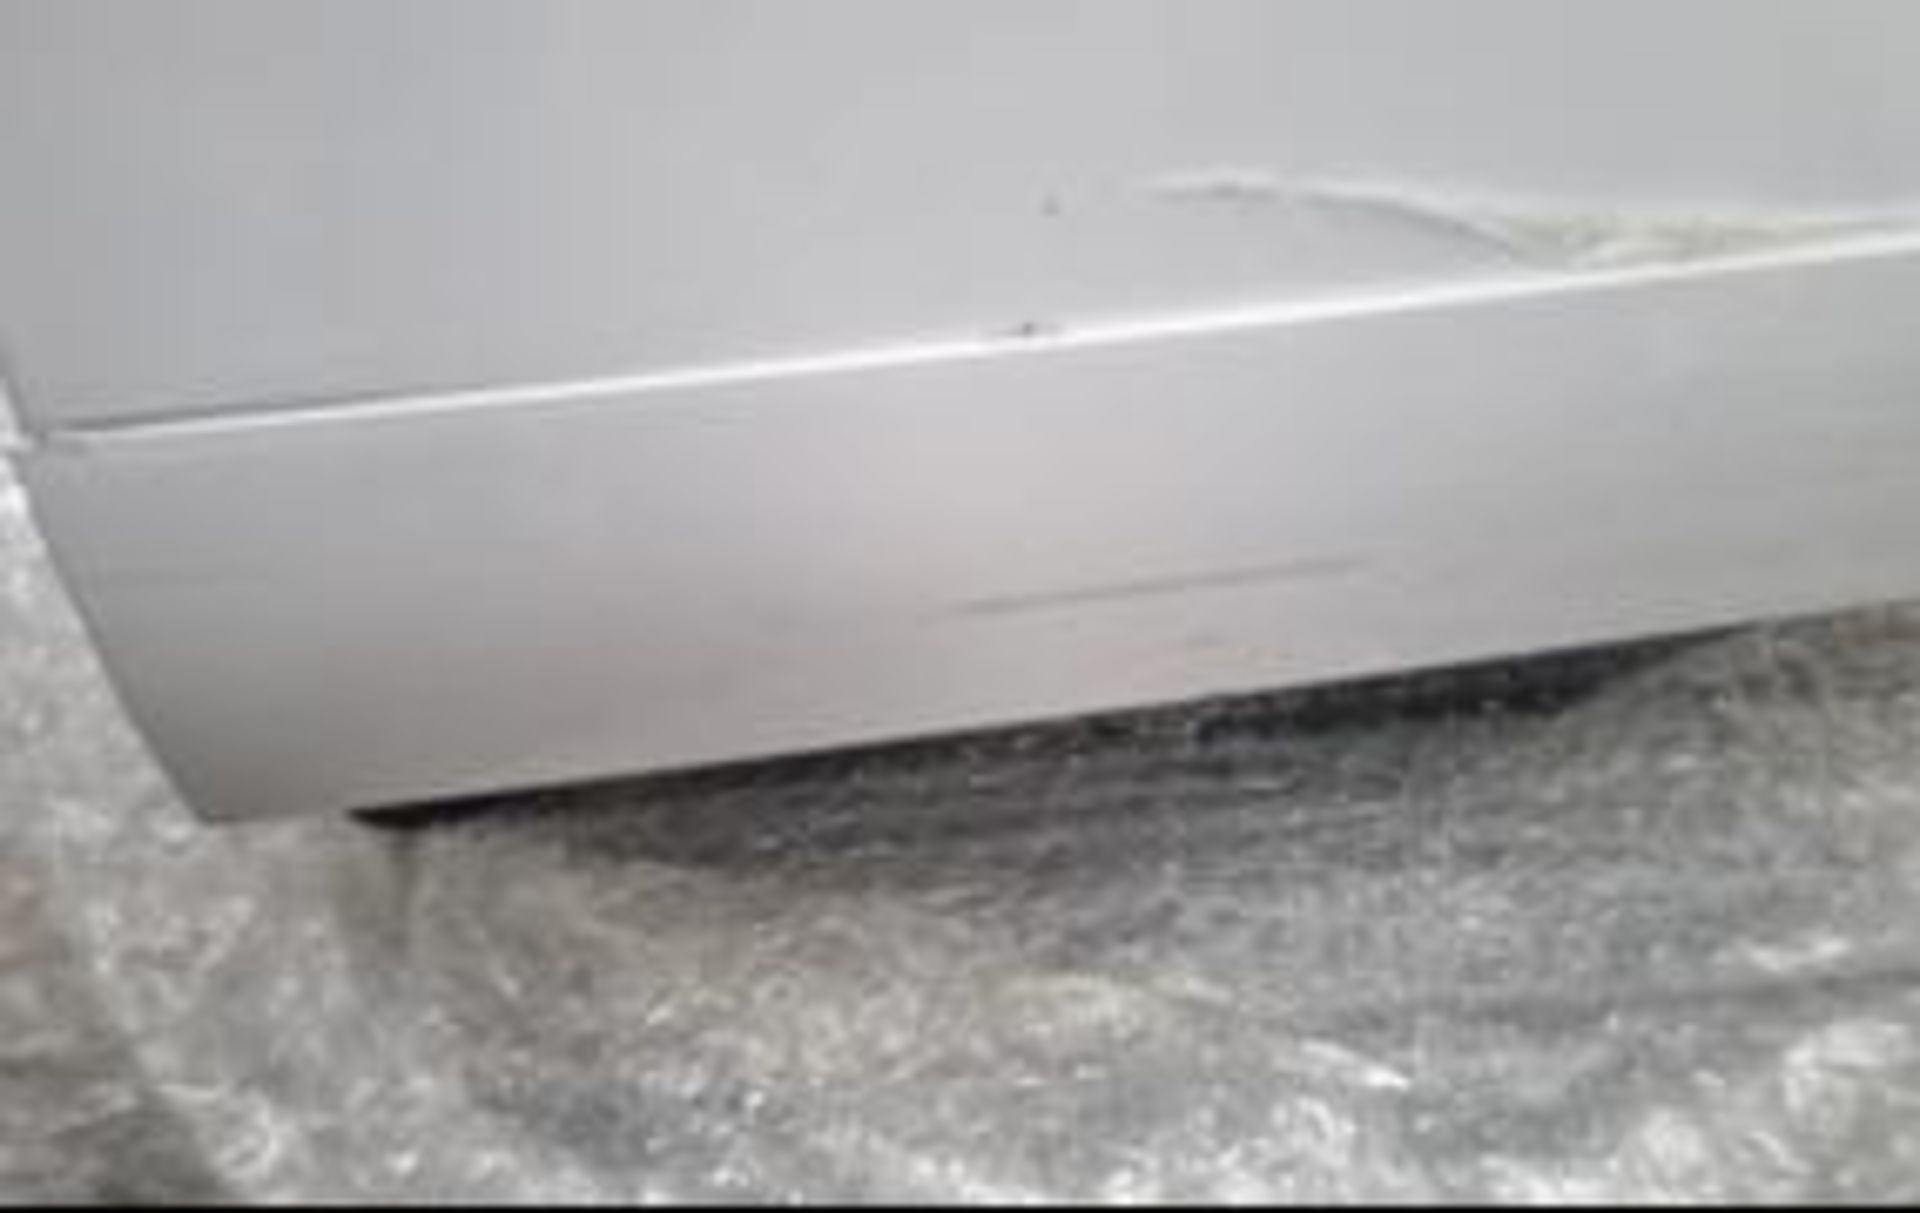 Grade C John Lewis & Partners JLDWW1327 Freestanding dishwasher in White - RRP: £469 - Image 6 of 6